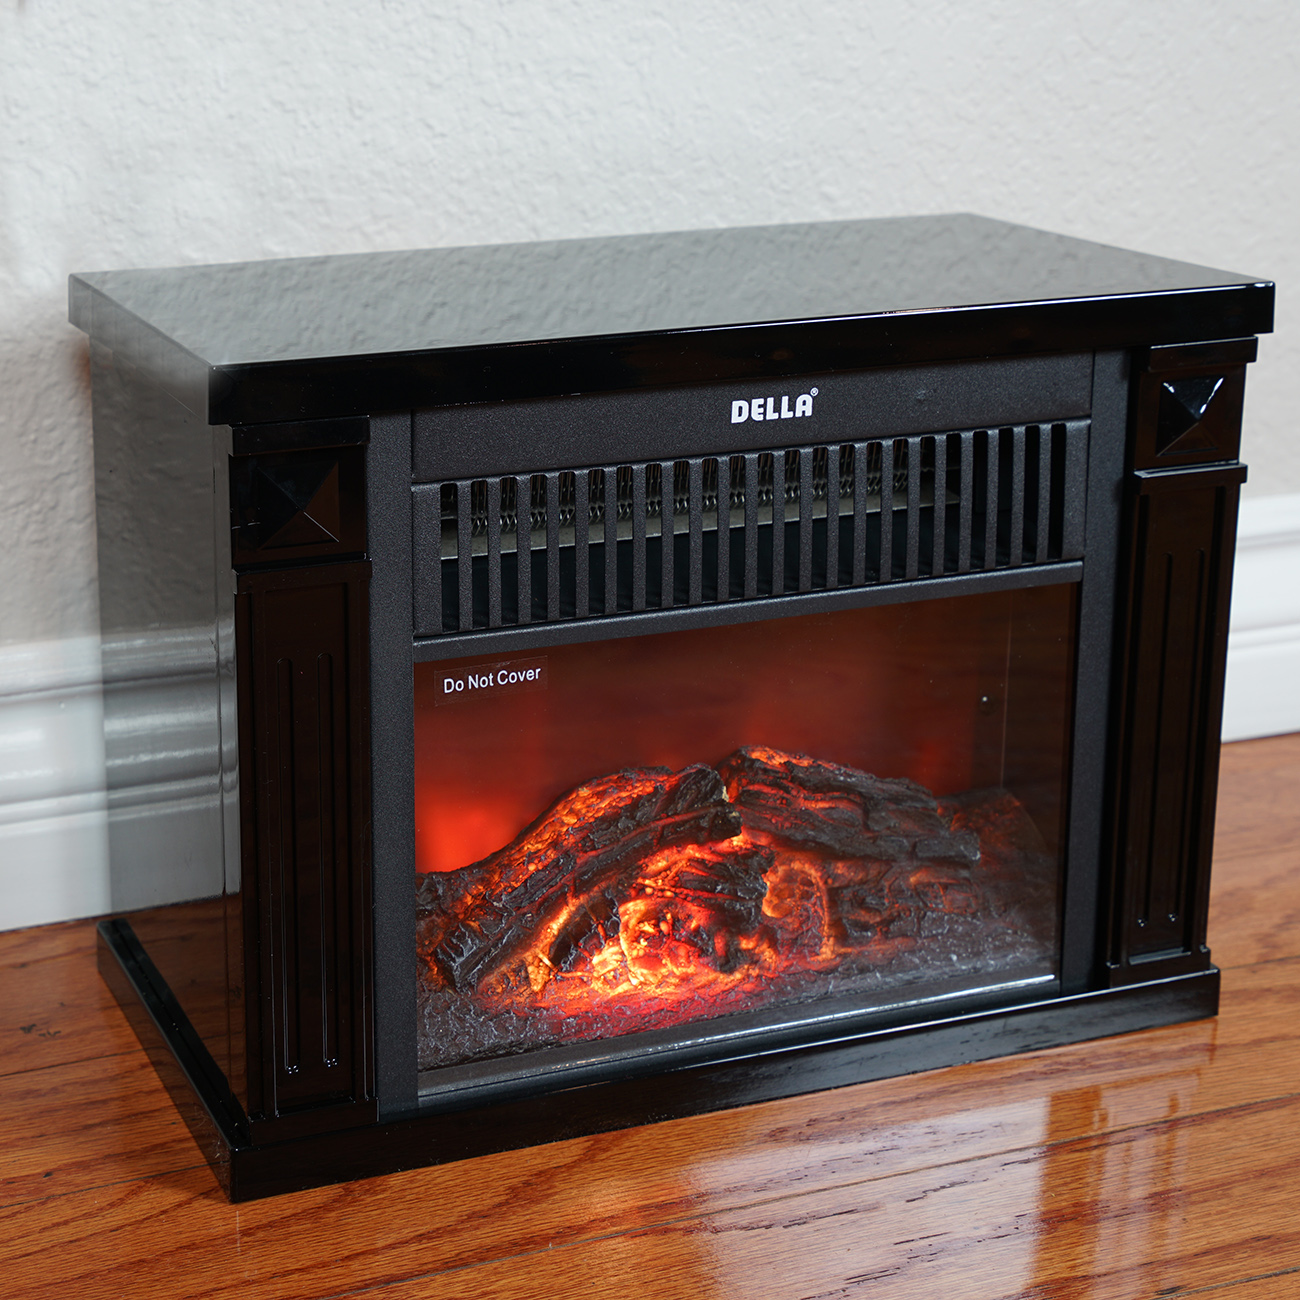 Febo Flame Electric Fireplace Beautiful Mini Electric Fireplace Charming Fireplace